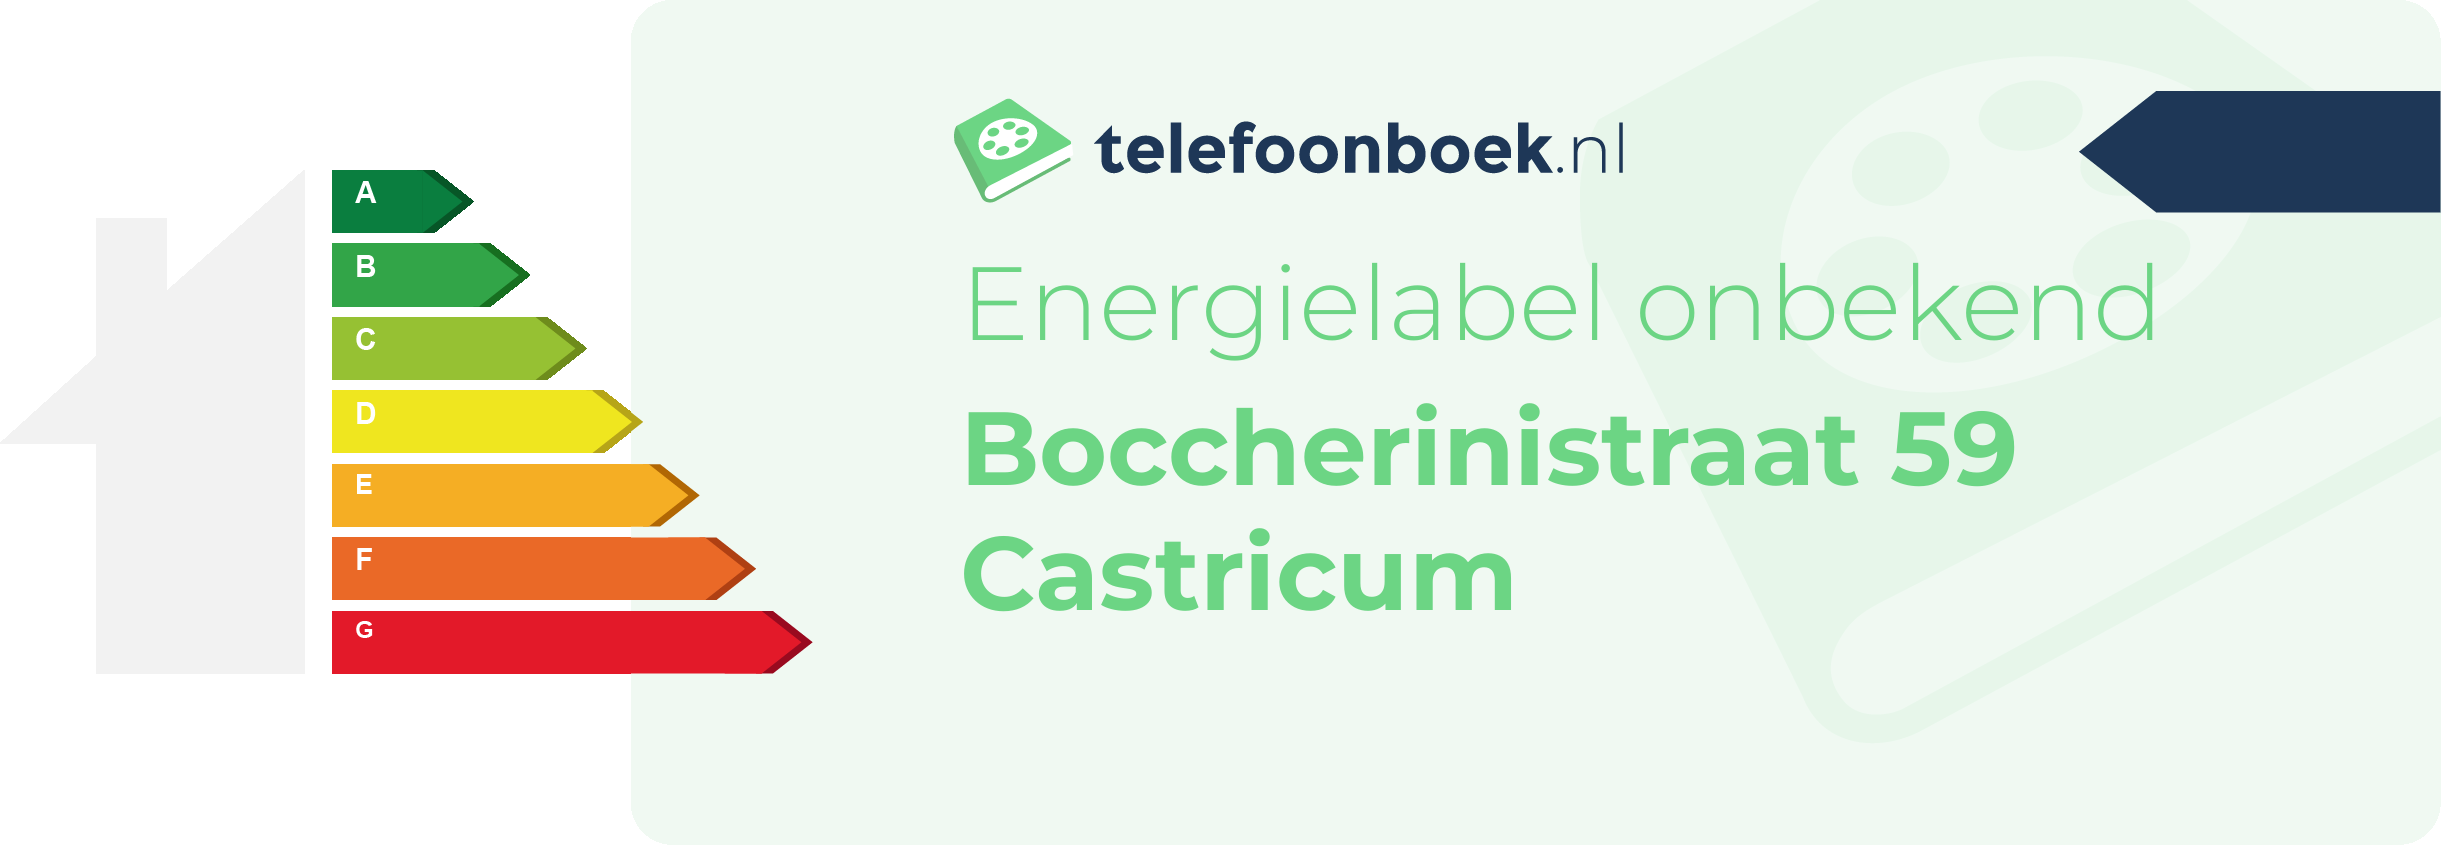 Energielabel Boccherinistraat 59 Castricum